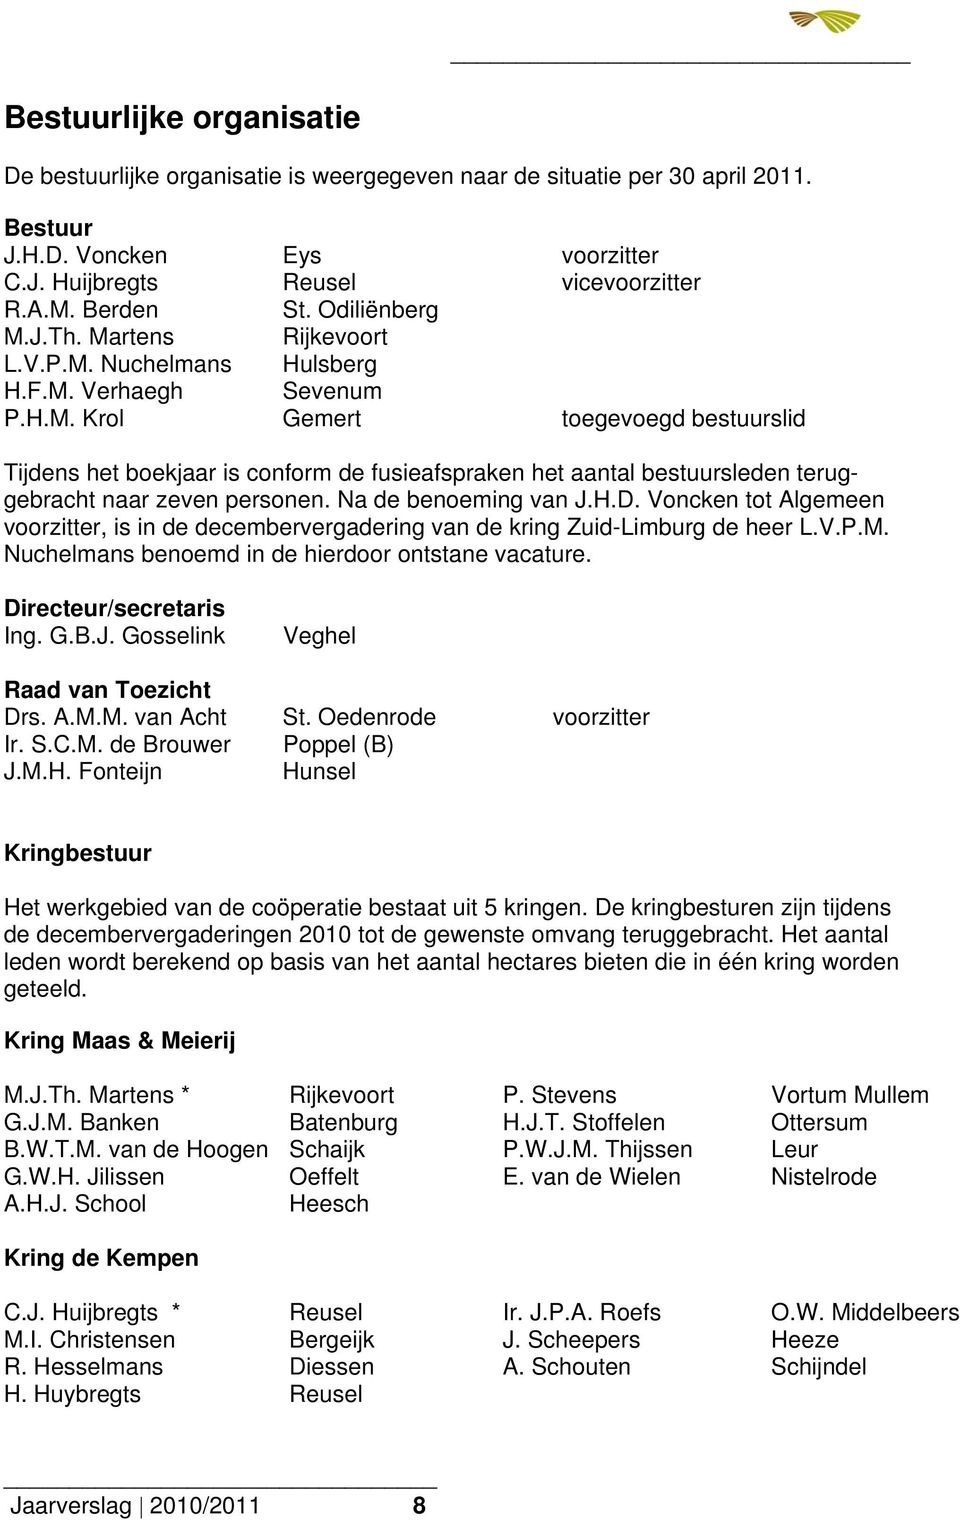 Na de benoeming van J.H.D. Voncken tot Algemeen voorzitter, is in de decembervergadering van de kring Zuid-Limburg de heer L.V.P.M. Nuchelmans benoemd in de hierdoor ontstane vacature.